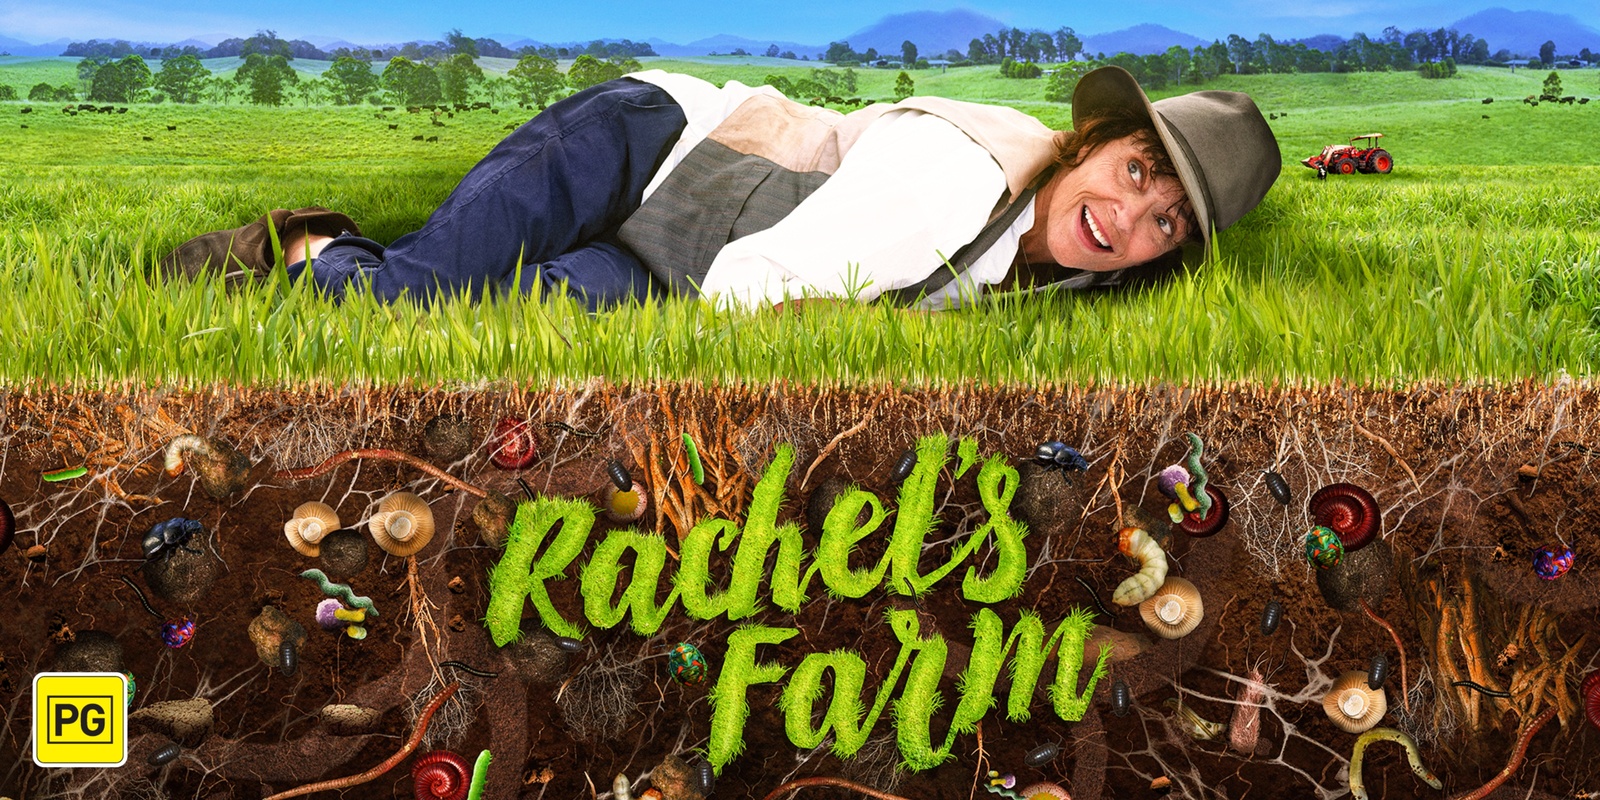 Banner image for Rachel's Farm - Community Choice movie